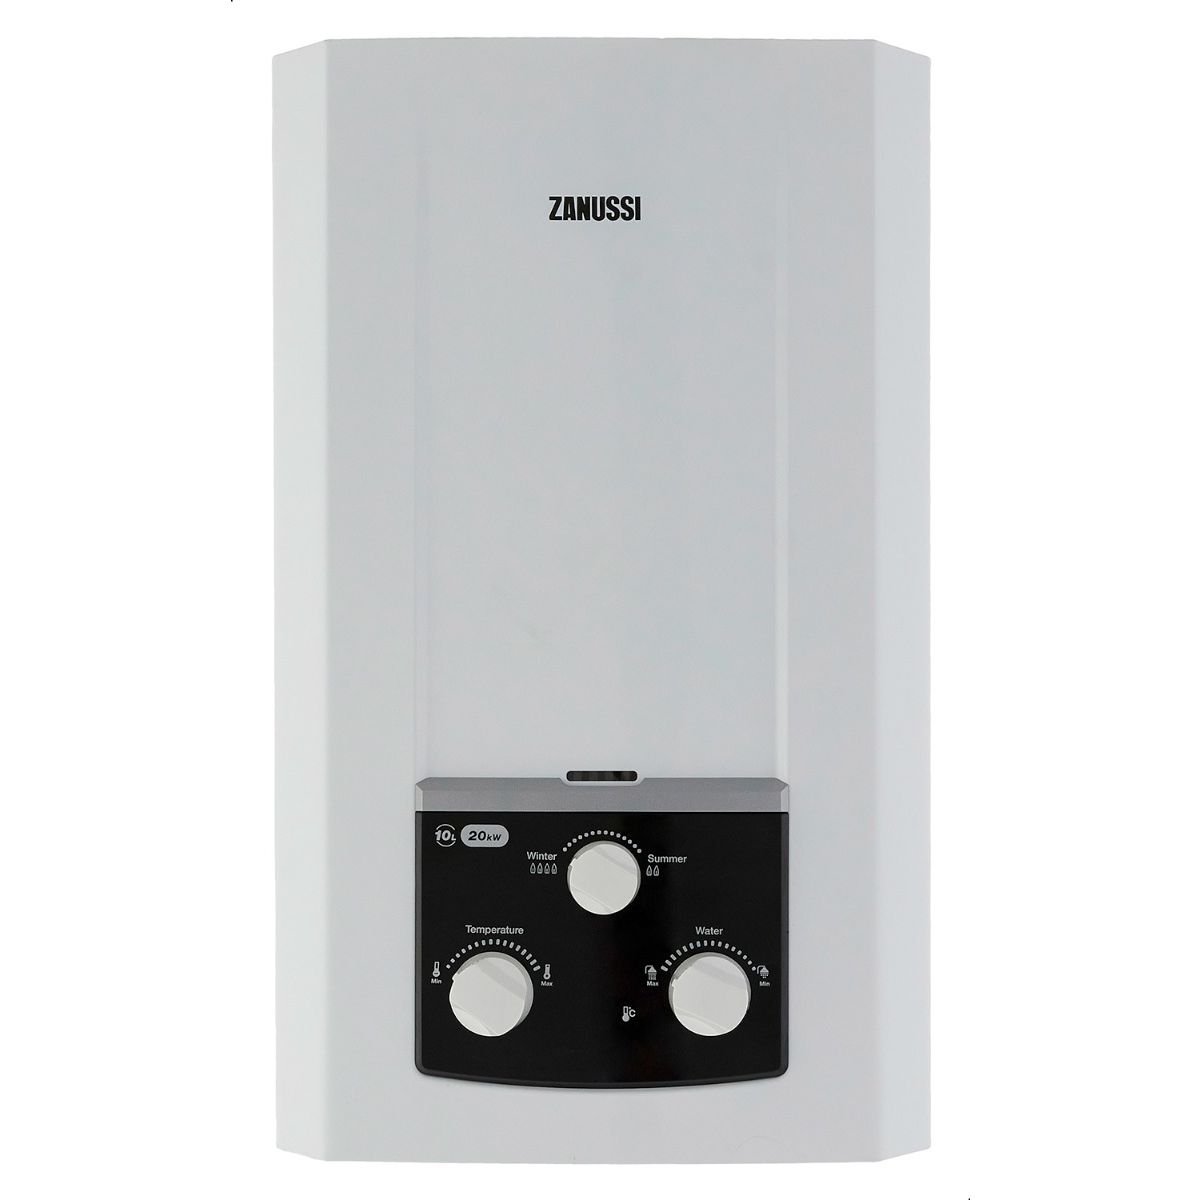 Zanussi Delta Gas Water Heater,10 Litre , White - 945105569